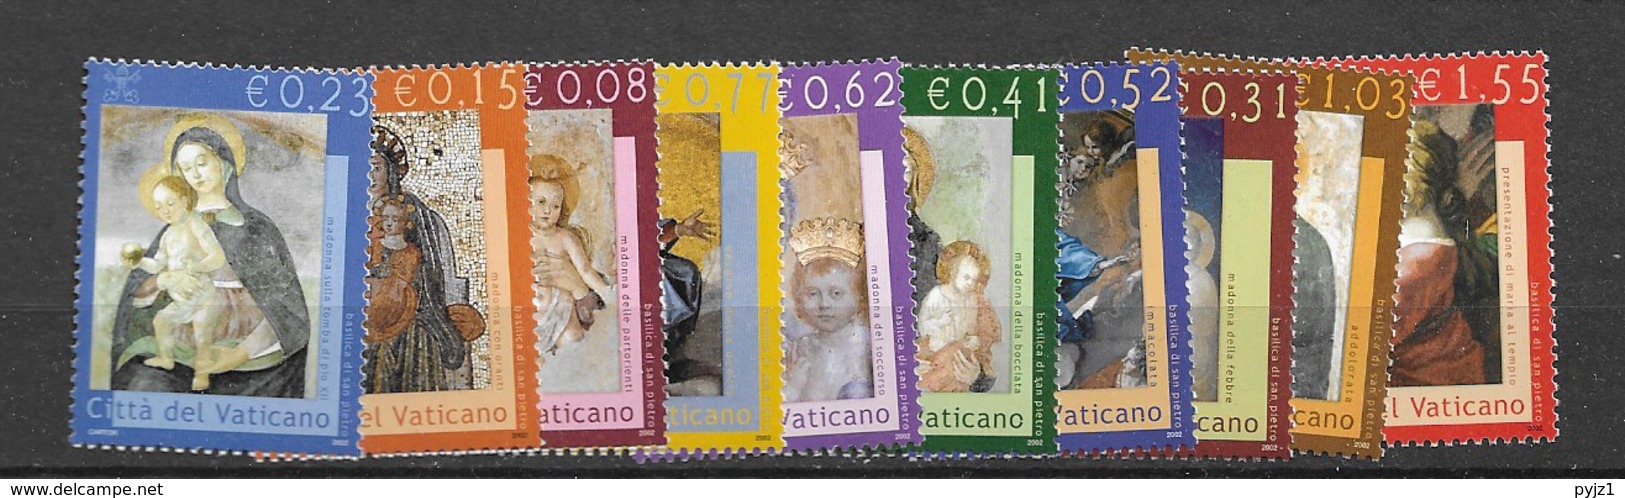 2002 MNH Vaticano 1394-1403 Postfris** - Ongebruikt